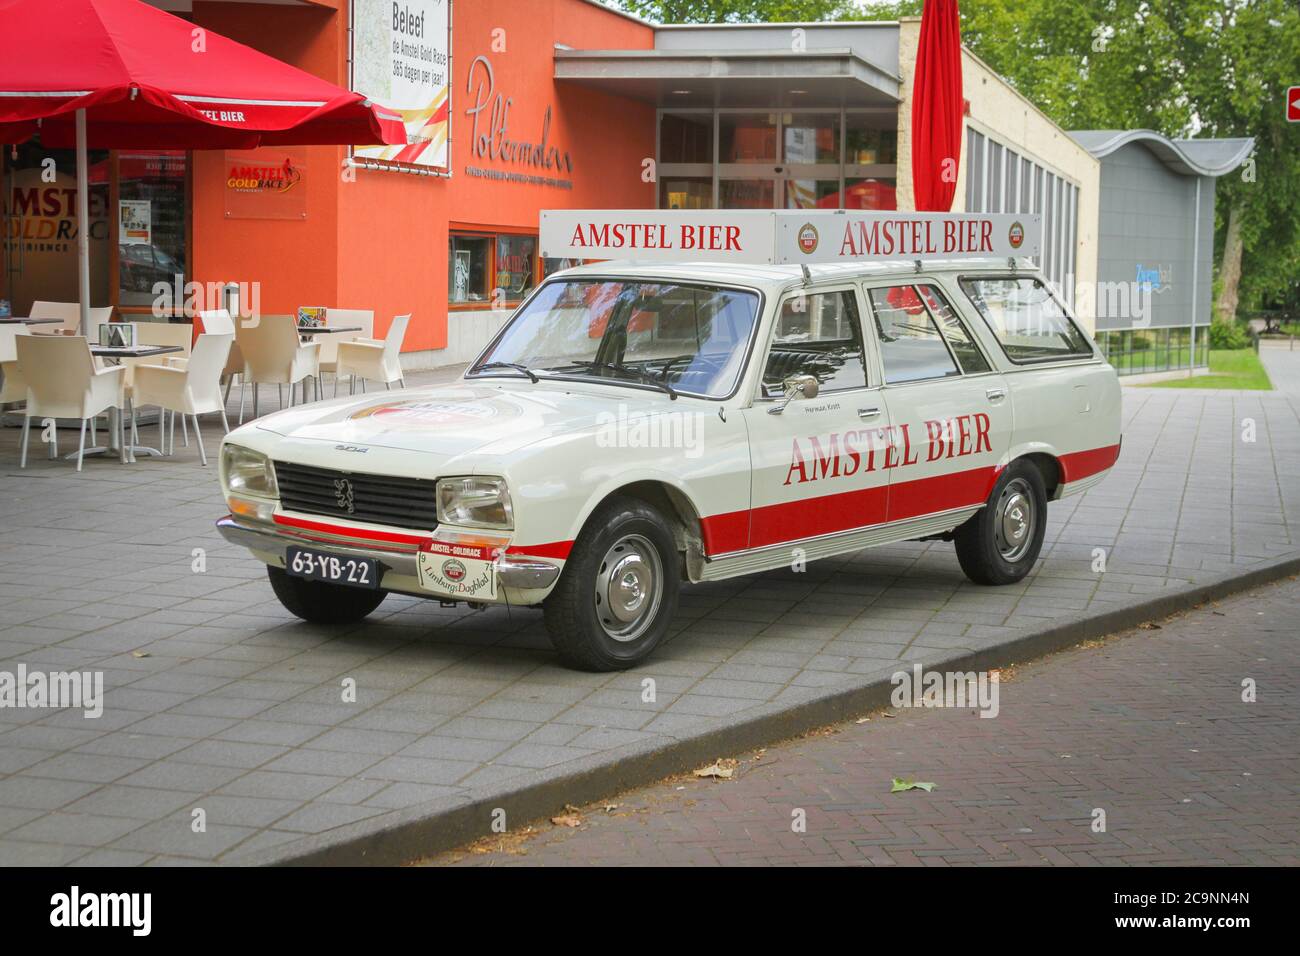 Peugeot Amstel Beer Wagon Stock Photo